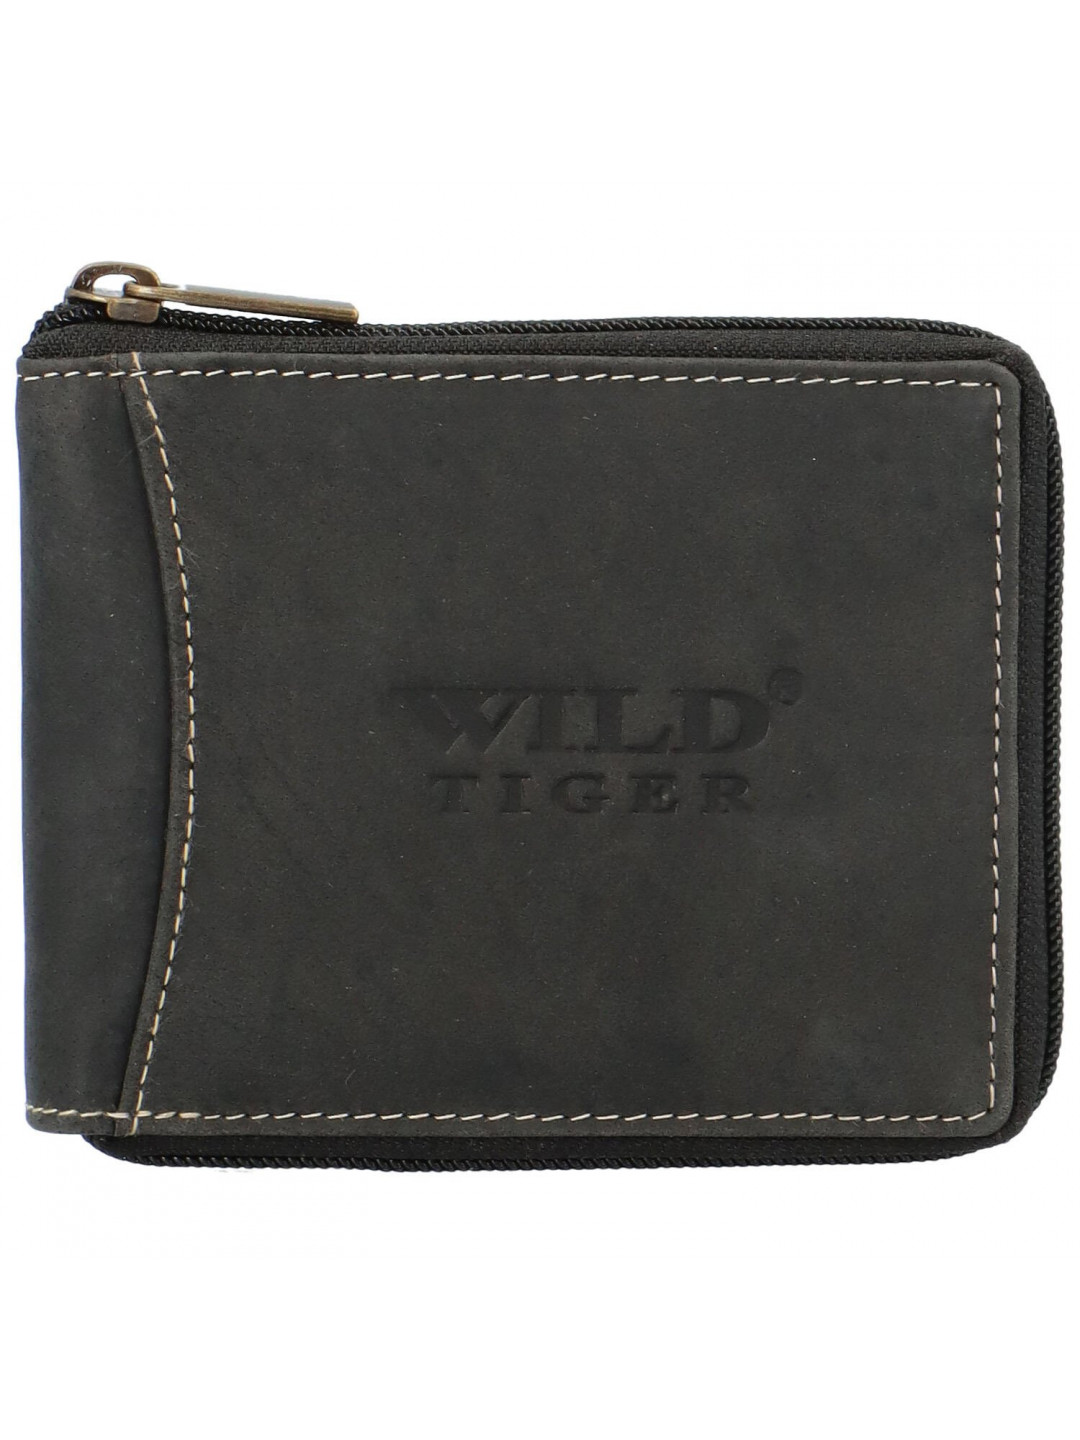 Pánská kožená peněženka Wild Tobin černá